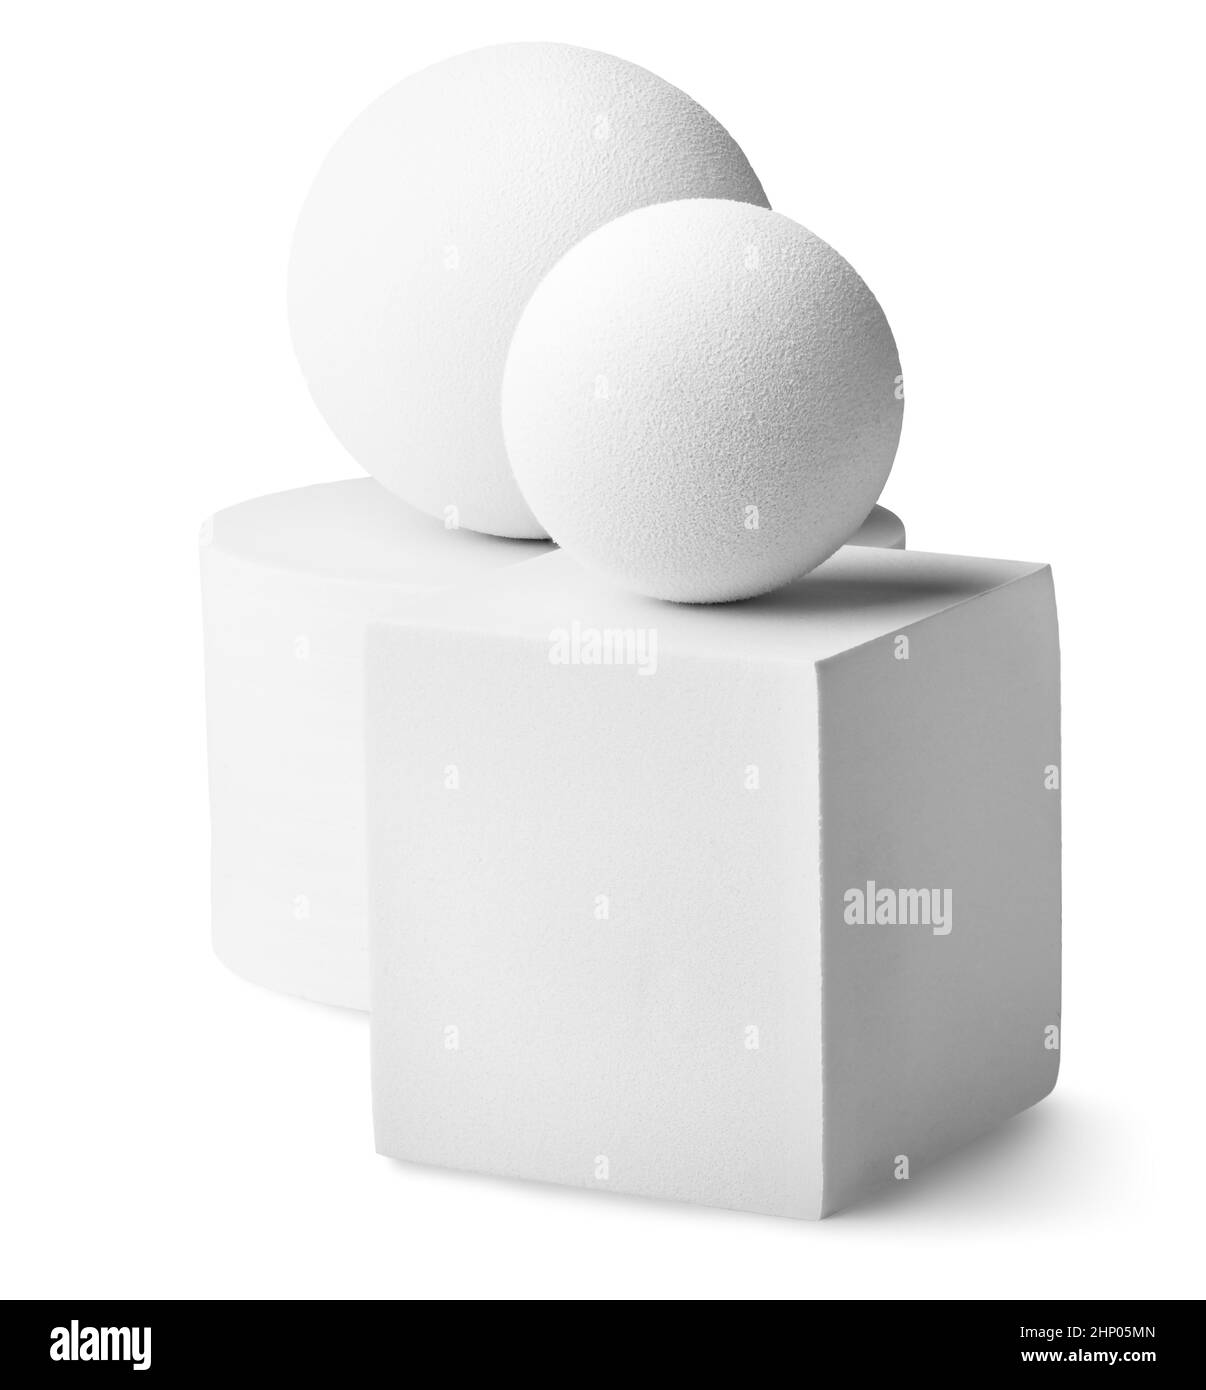 Cylindre blanc, deux boules et un carré isolé sur fond blanc Banque D'Images